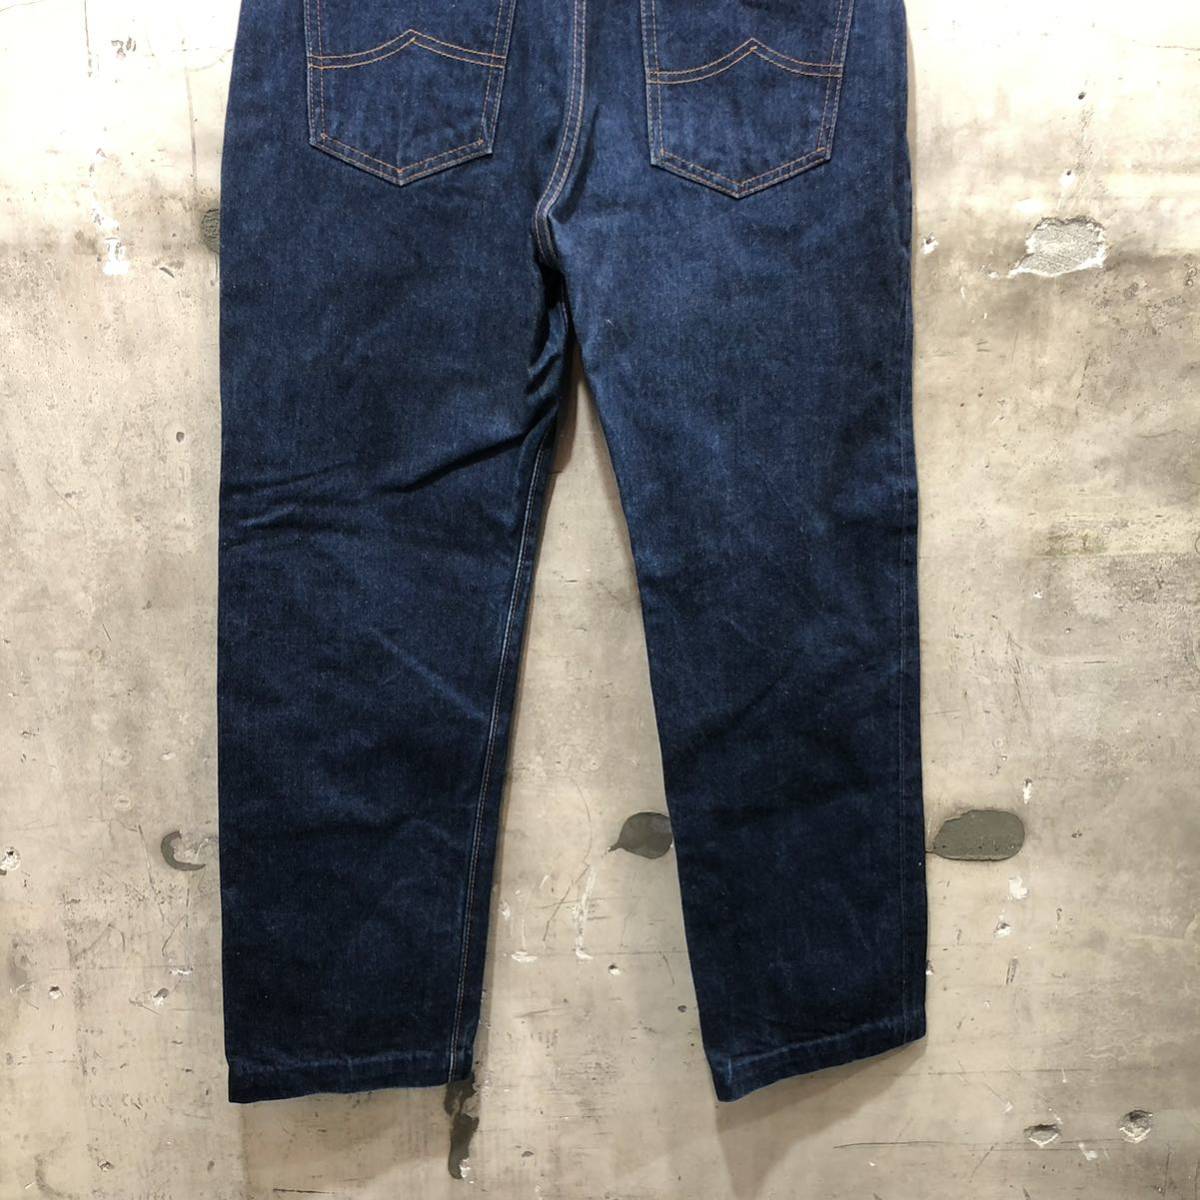  японского производства  винтаж ...BOBSON прямой    Denim   джинсы  ...